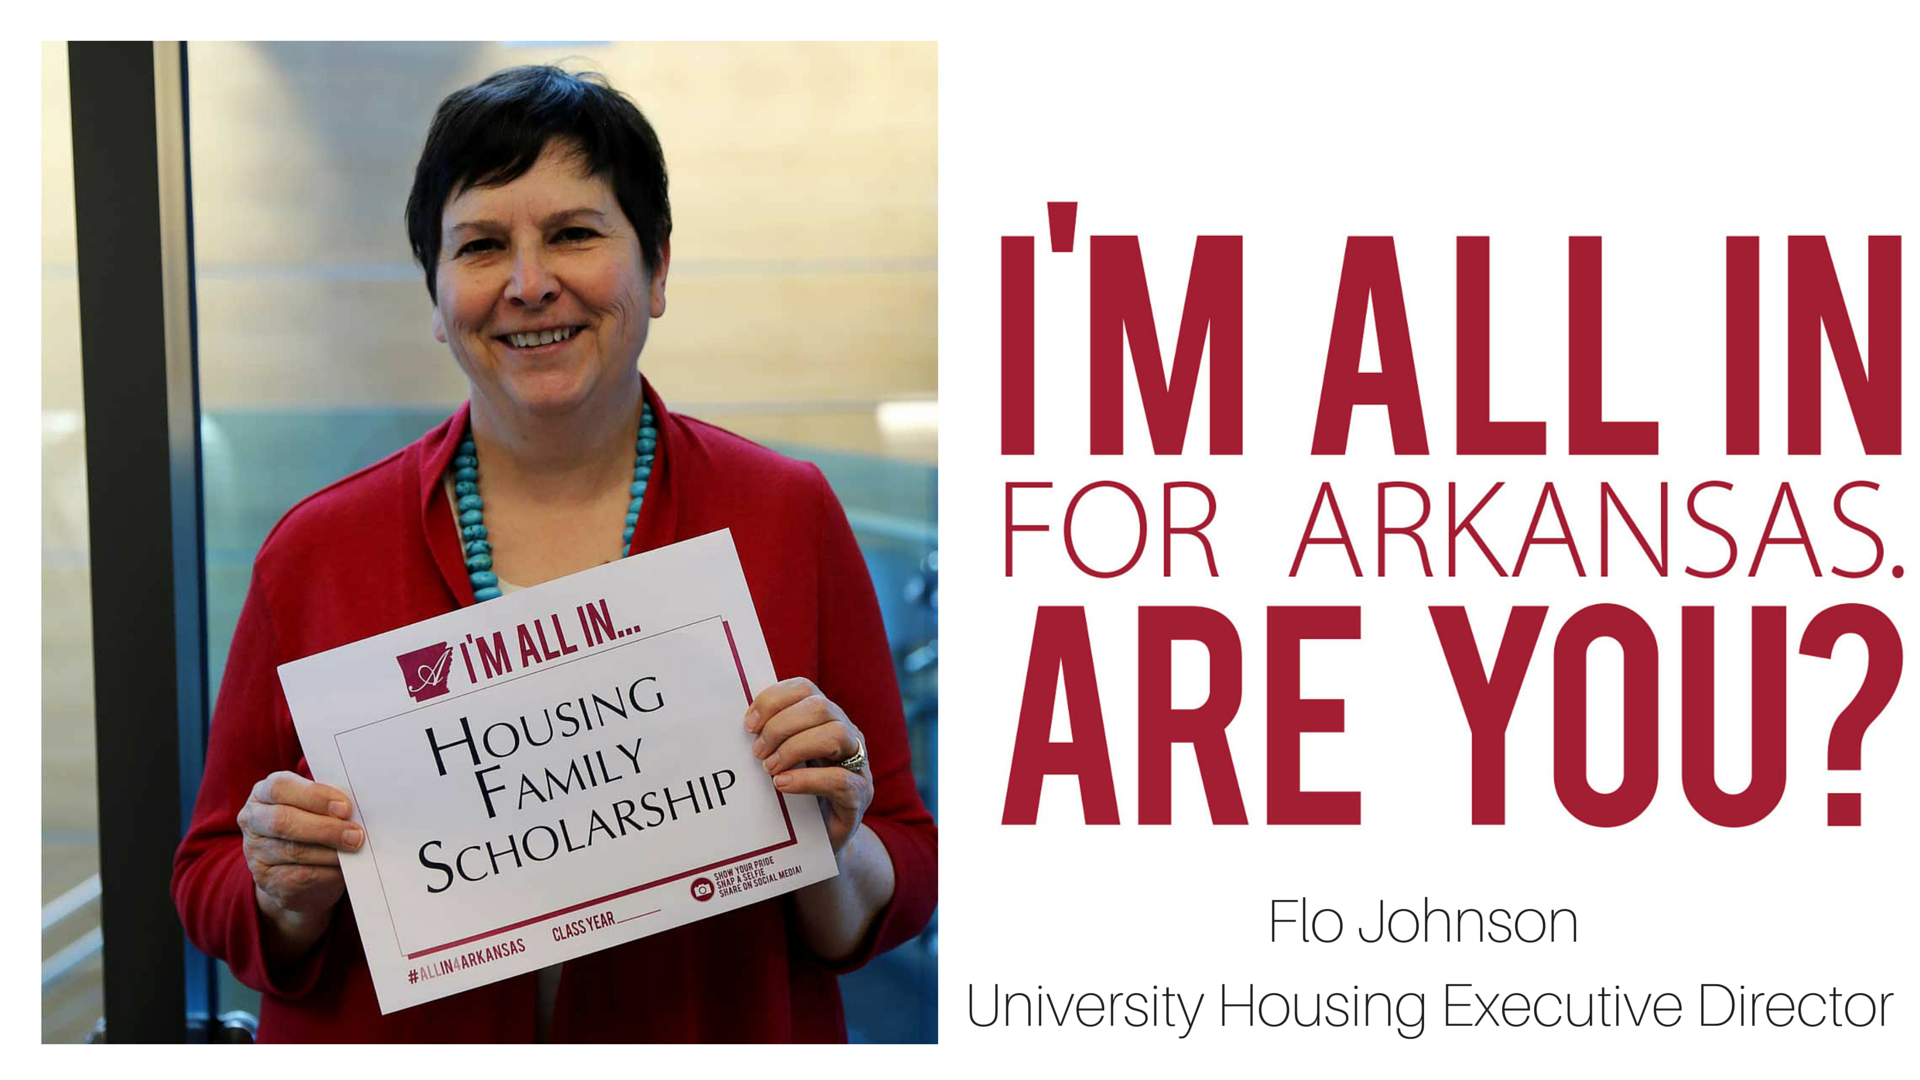 Housing Joins All in for Arkansas to Establish Family Scholarship